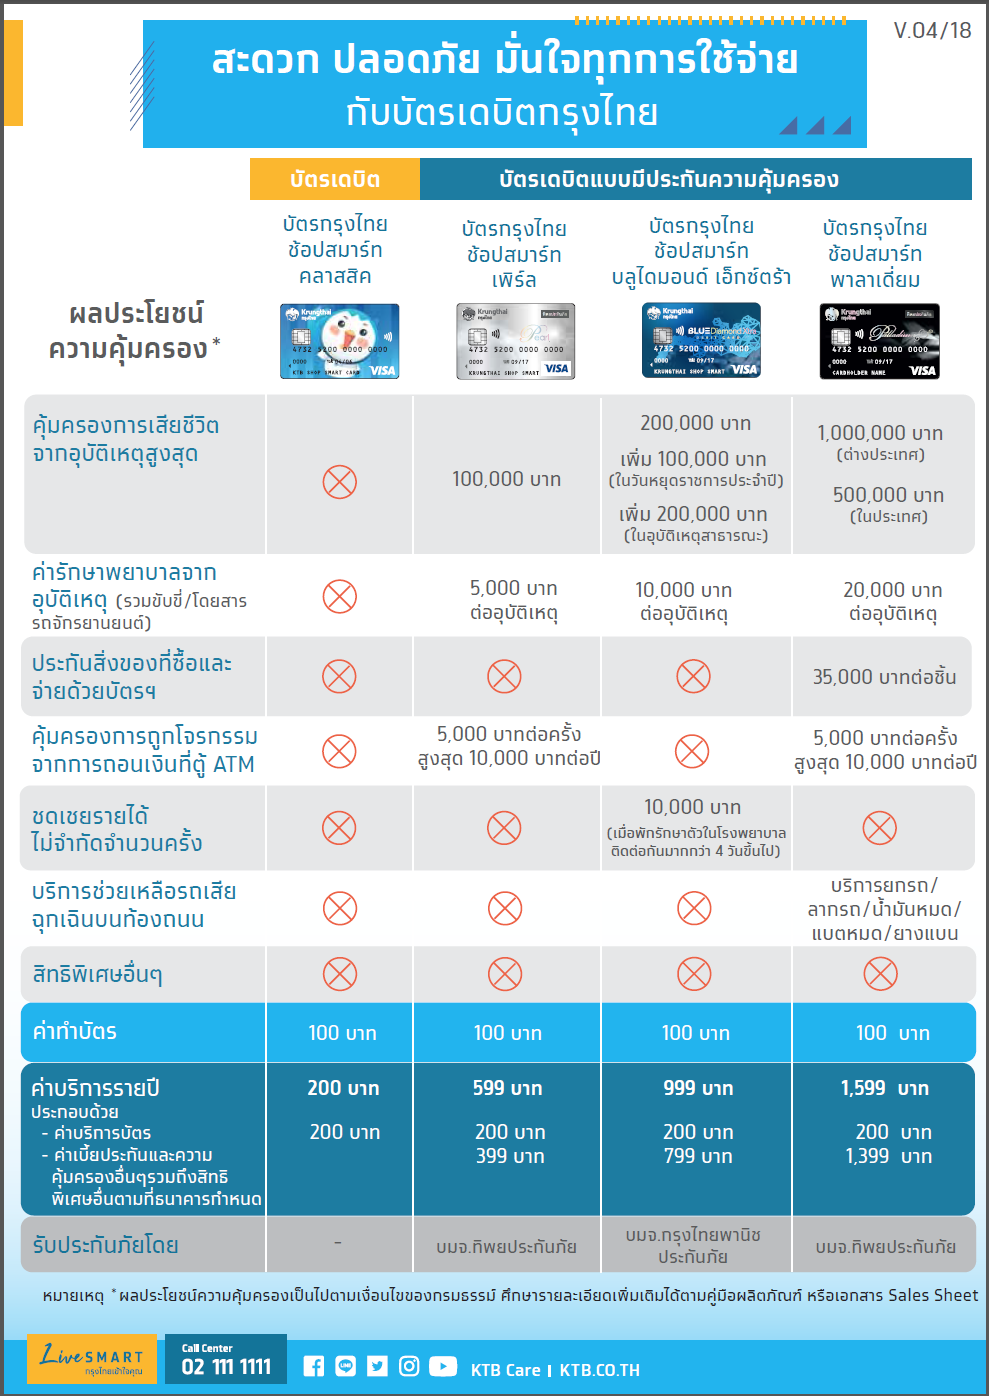 เปิดบัญชีกับกรุงไทยพร้อมบัตรAtmขั้นต่ำเท่าไหร่ - Pantip